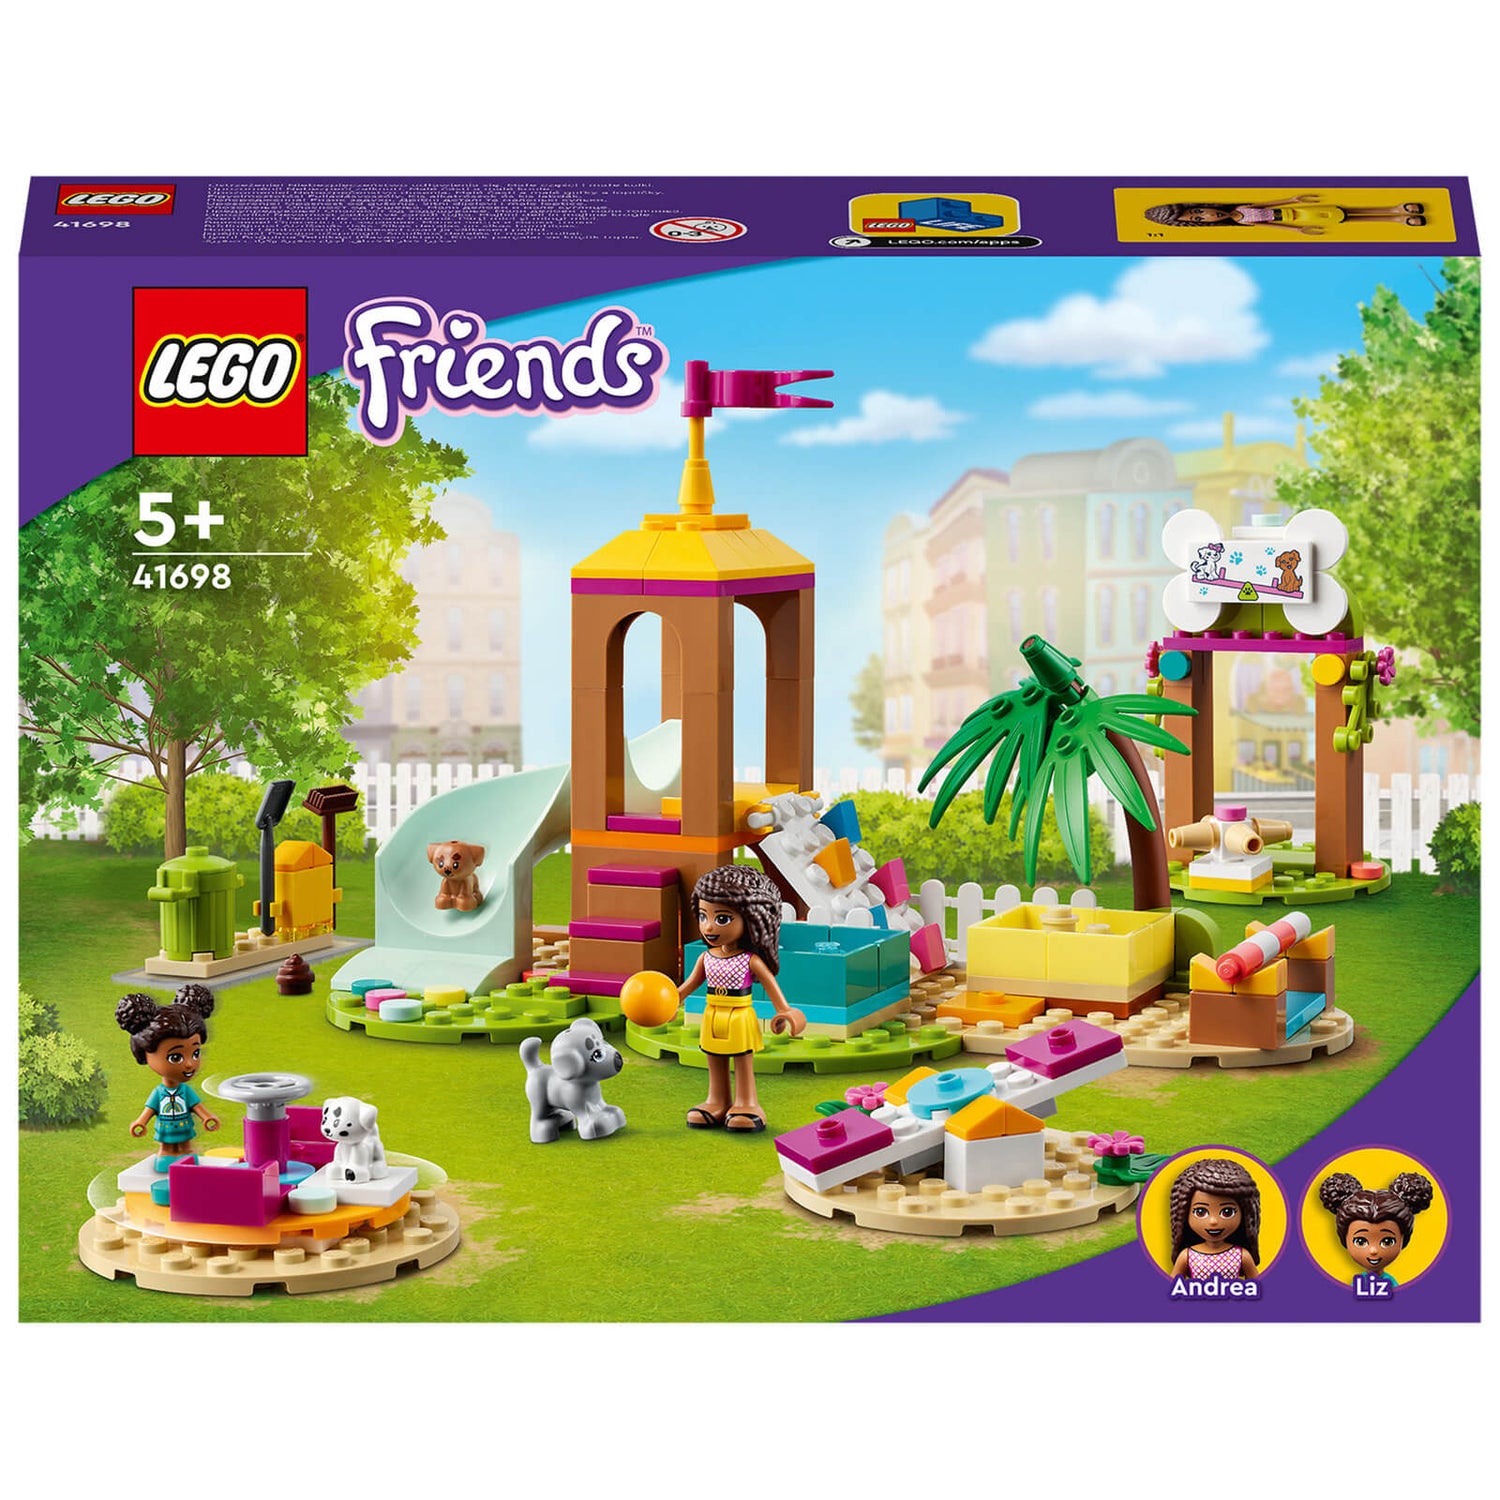 LEGO Friends: Puppy Set with Andrea (41698) - Zavvi US